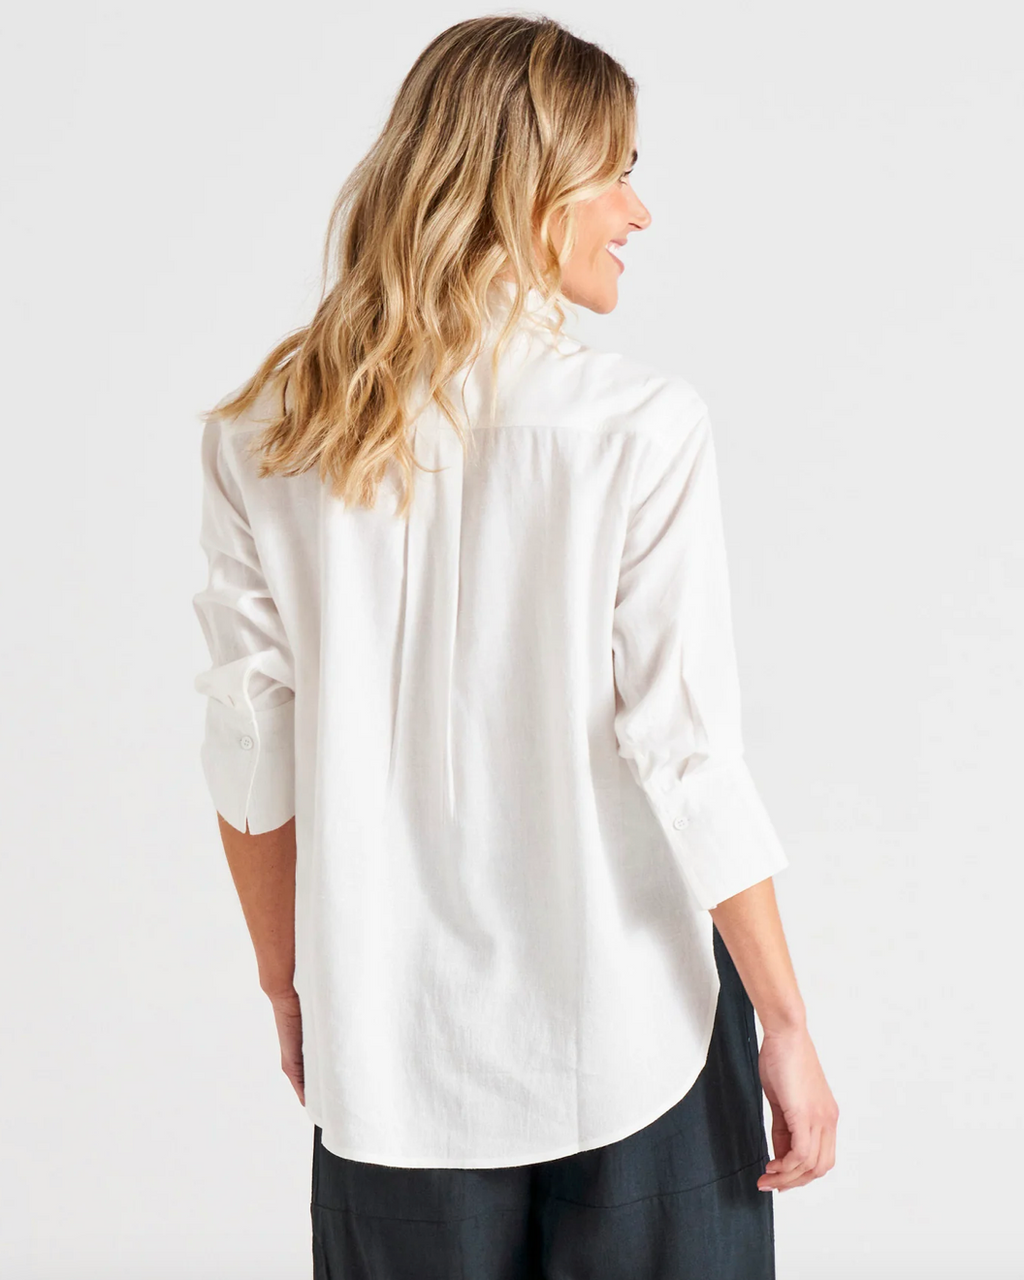 Caprice Shirt by Betty Basics - White